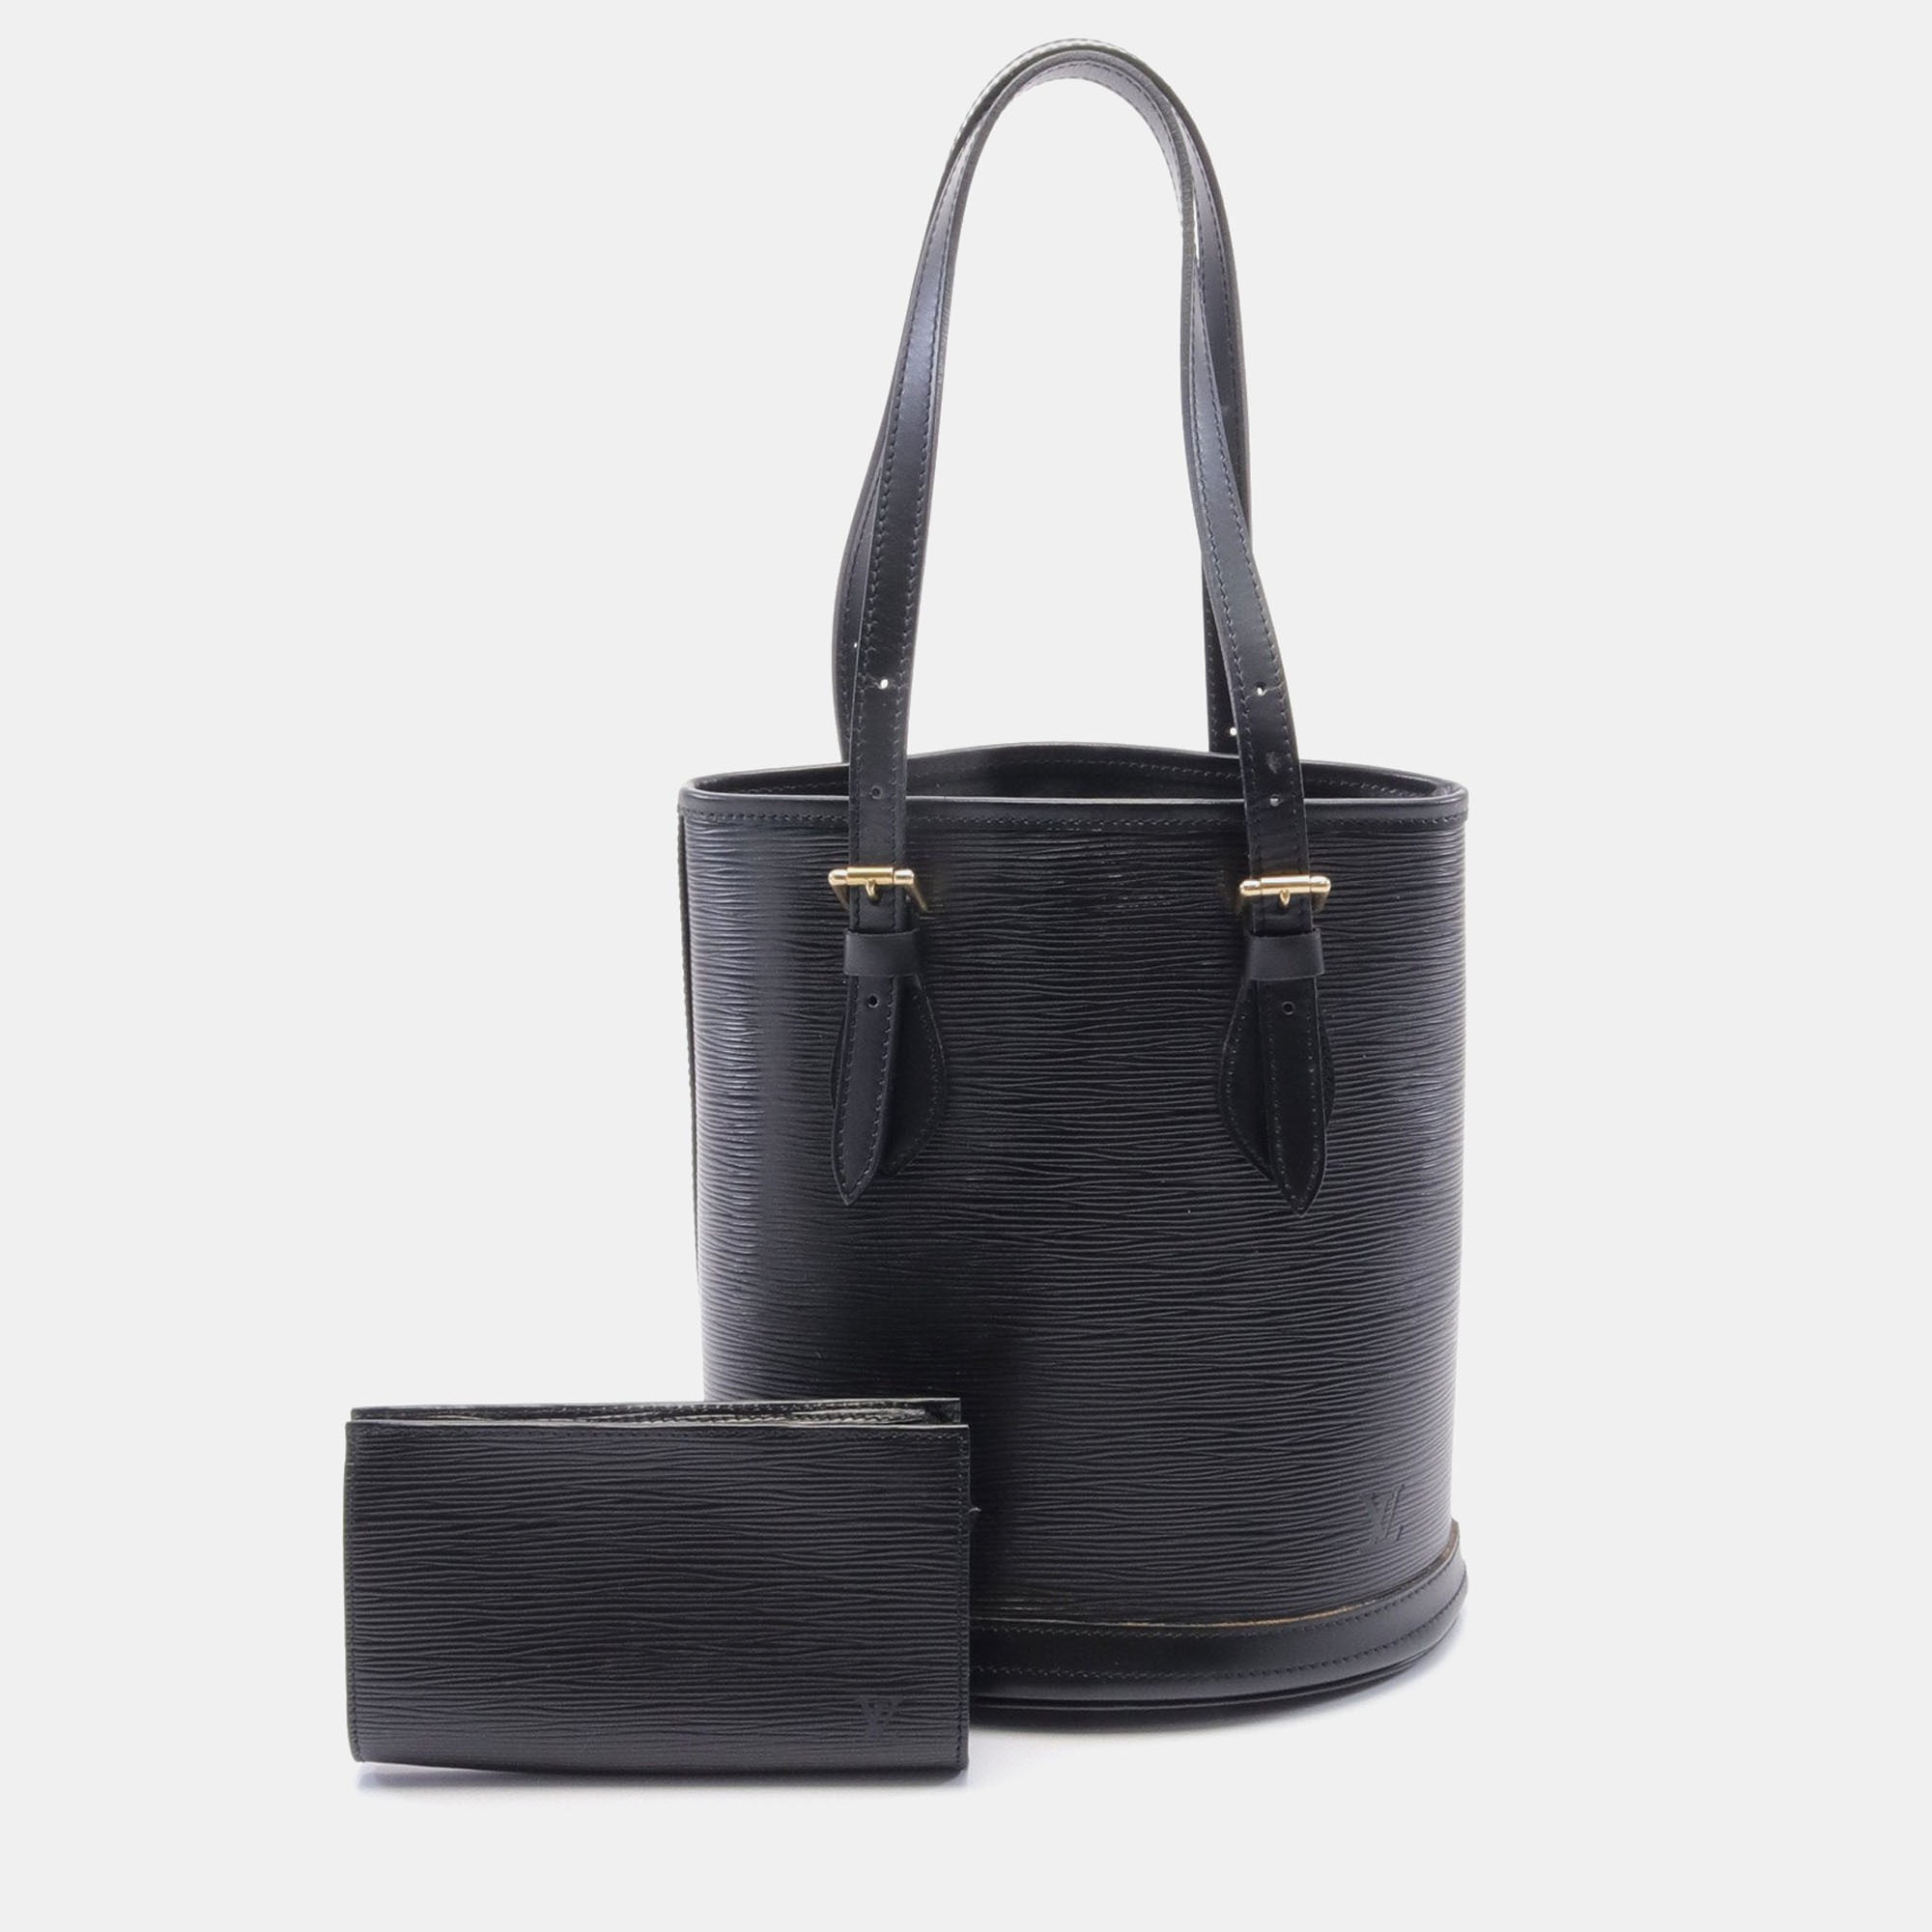 Louis vuitton bucket pm epi noir handbag leather black